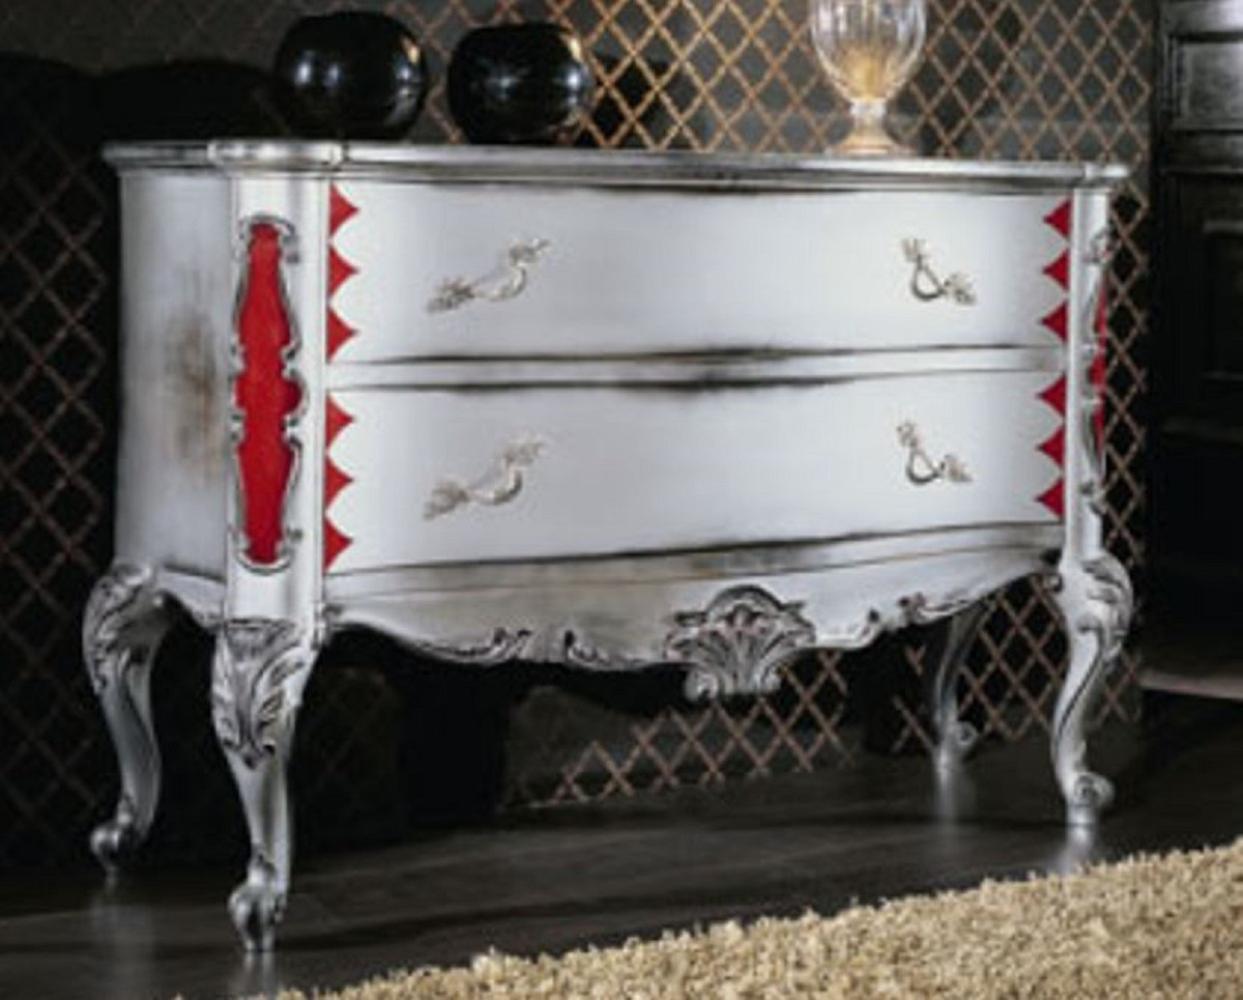 Casa Padrino Luxus Barock Kommode Antik Weiß / Silber / Rot - Handgefertigte Massivholz Kommode mit 2 Schubladen - Barockstil Schlafzimmer Möbel - Barock Möbel - Luxus Qualität - Made in Italy Bild 1